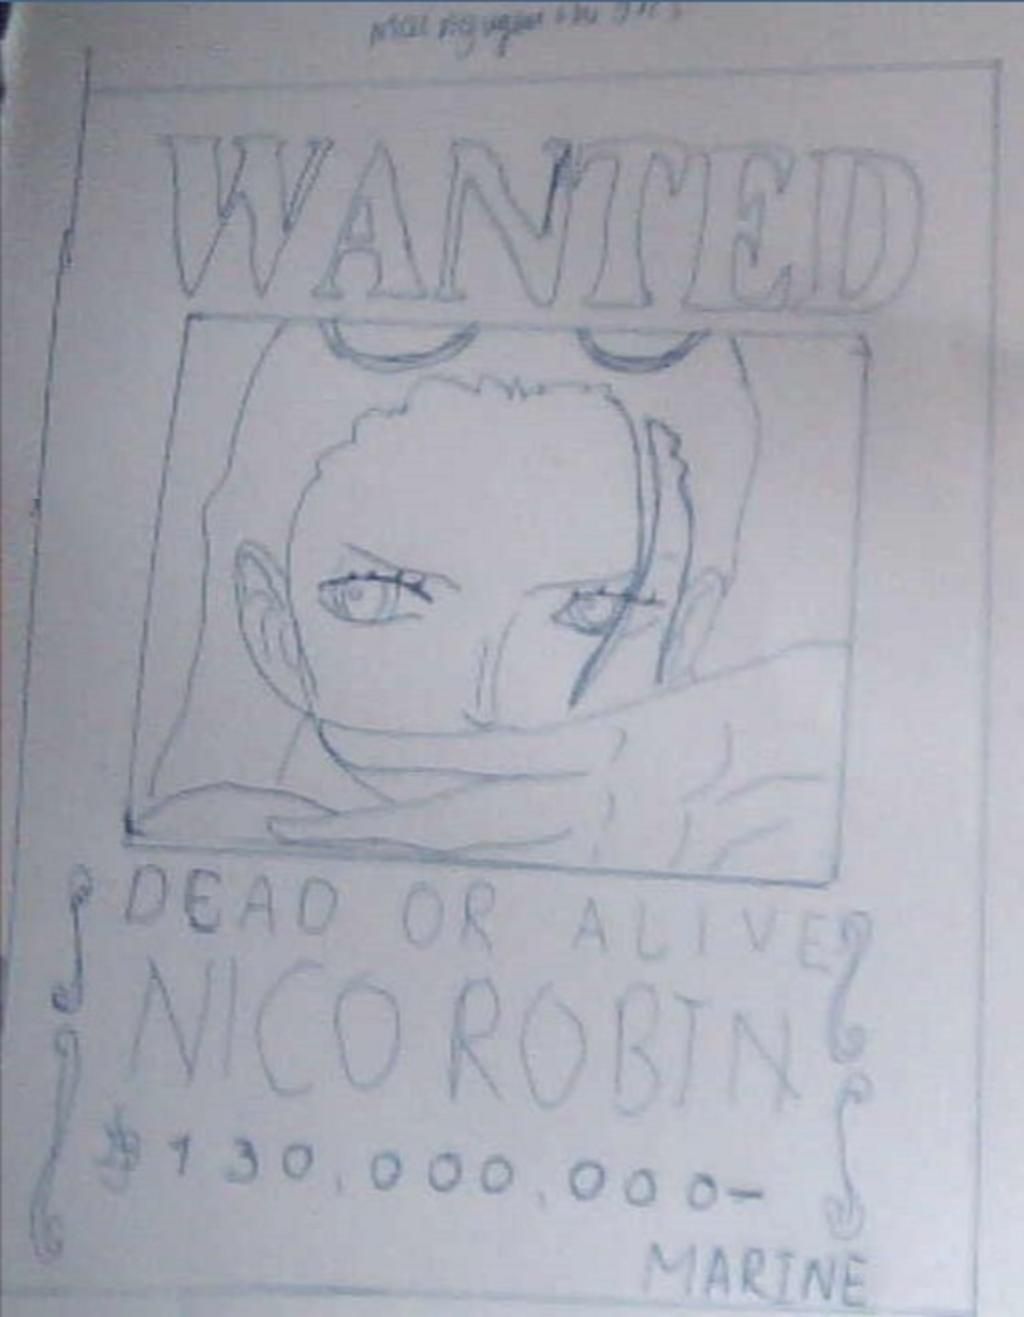 Hồ sơ nhân vật Nico Robin One Piece  Hồ Sơ Nhân Vật